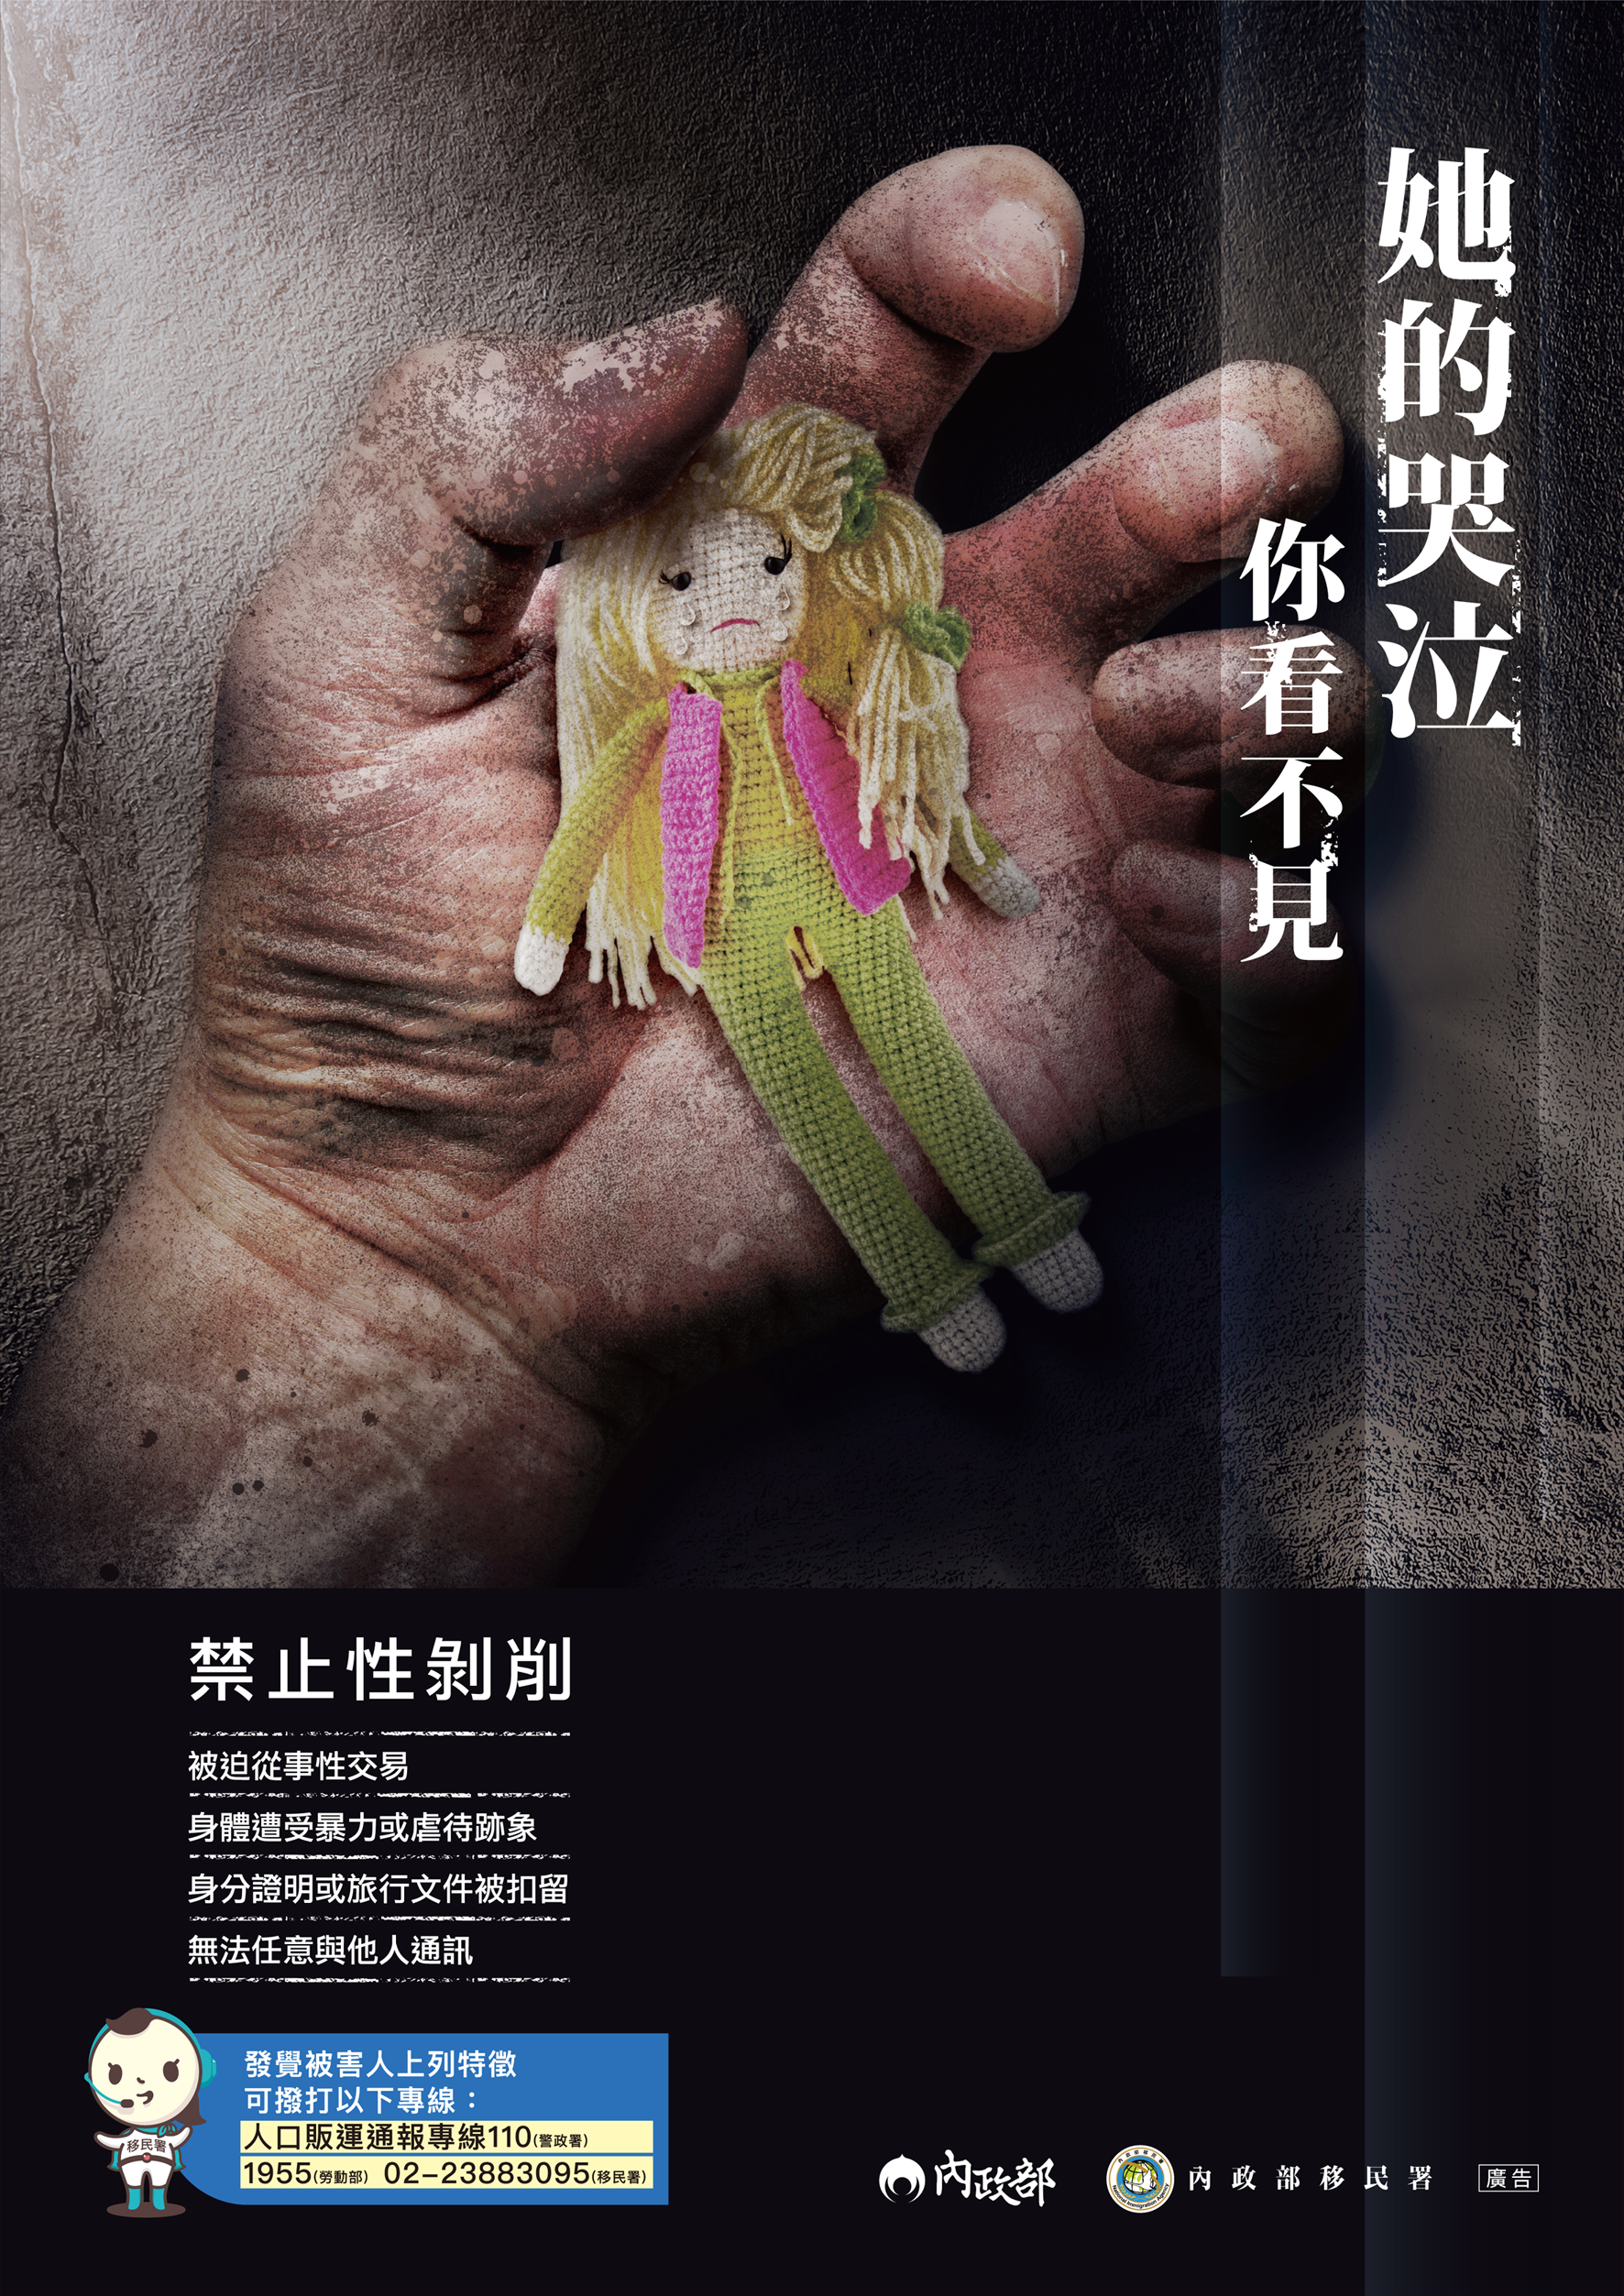 防制人口販運宣導海報-禁止性剝削-中文